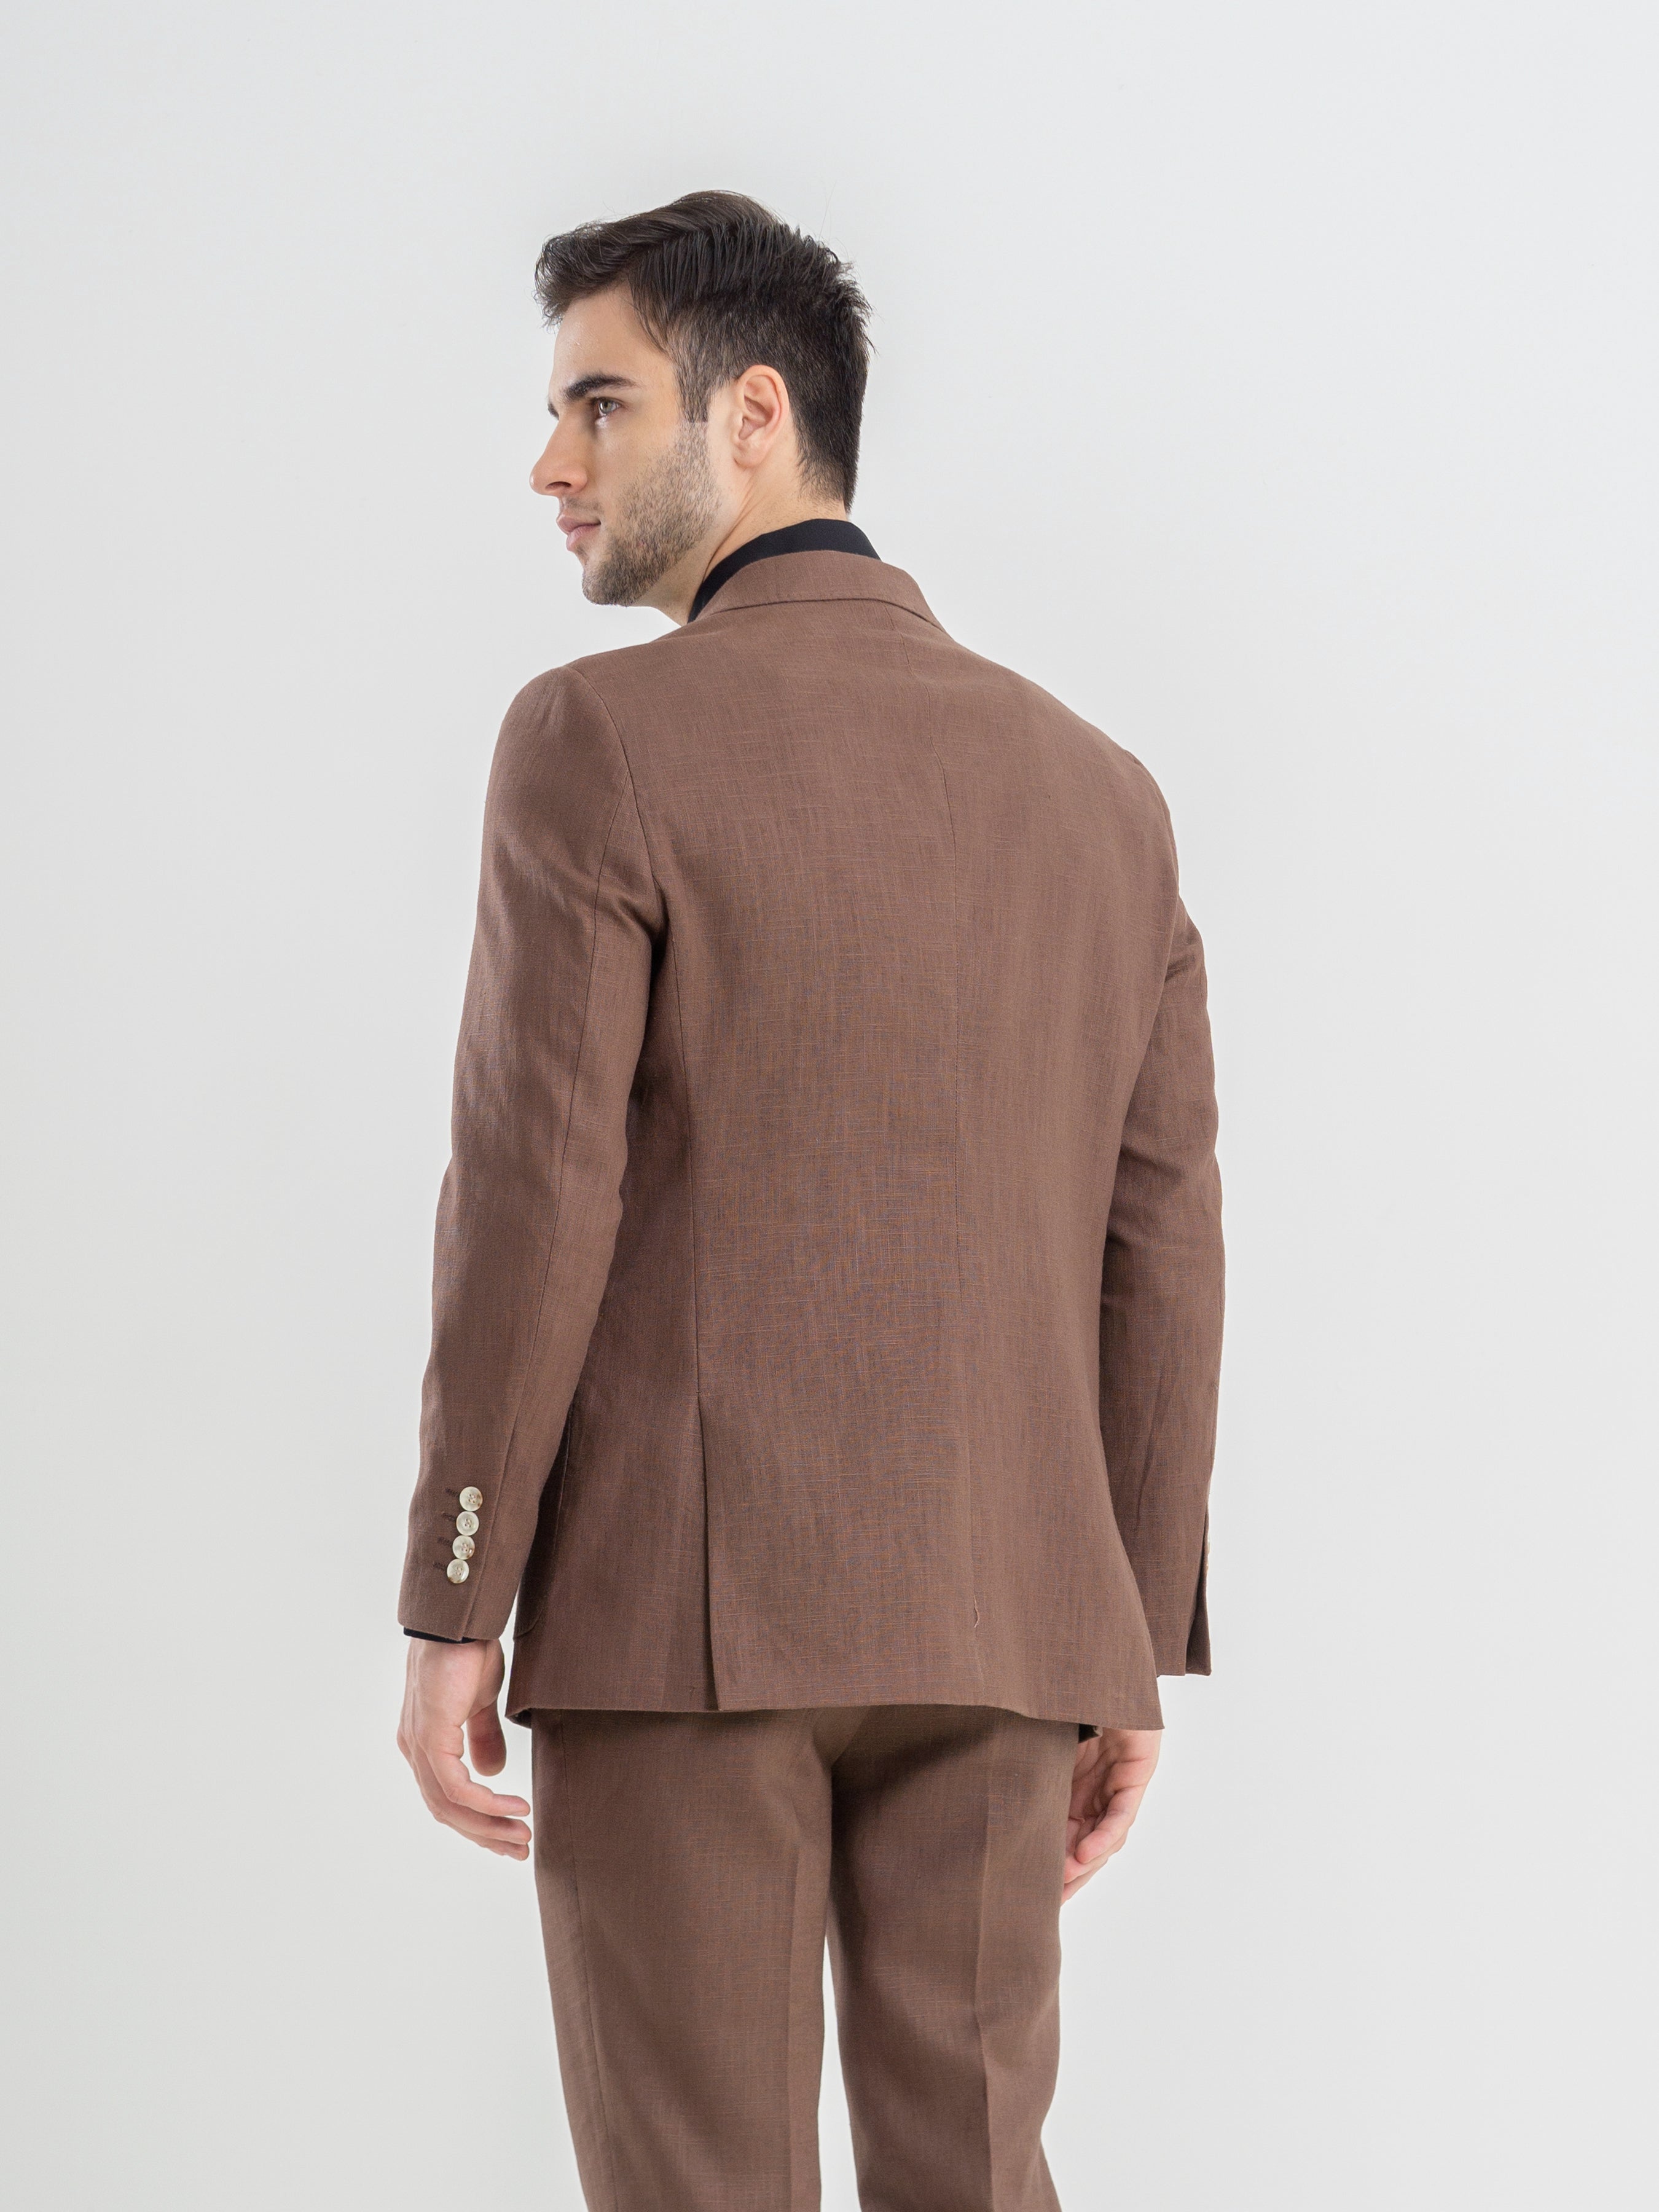 Single Breasted Suit Blazer - Linen Coffee Plain (Peak Lapel)